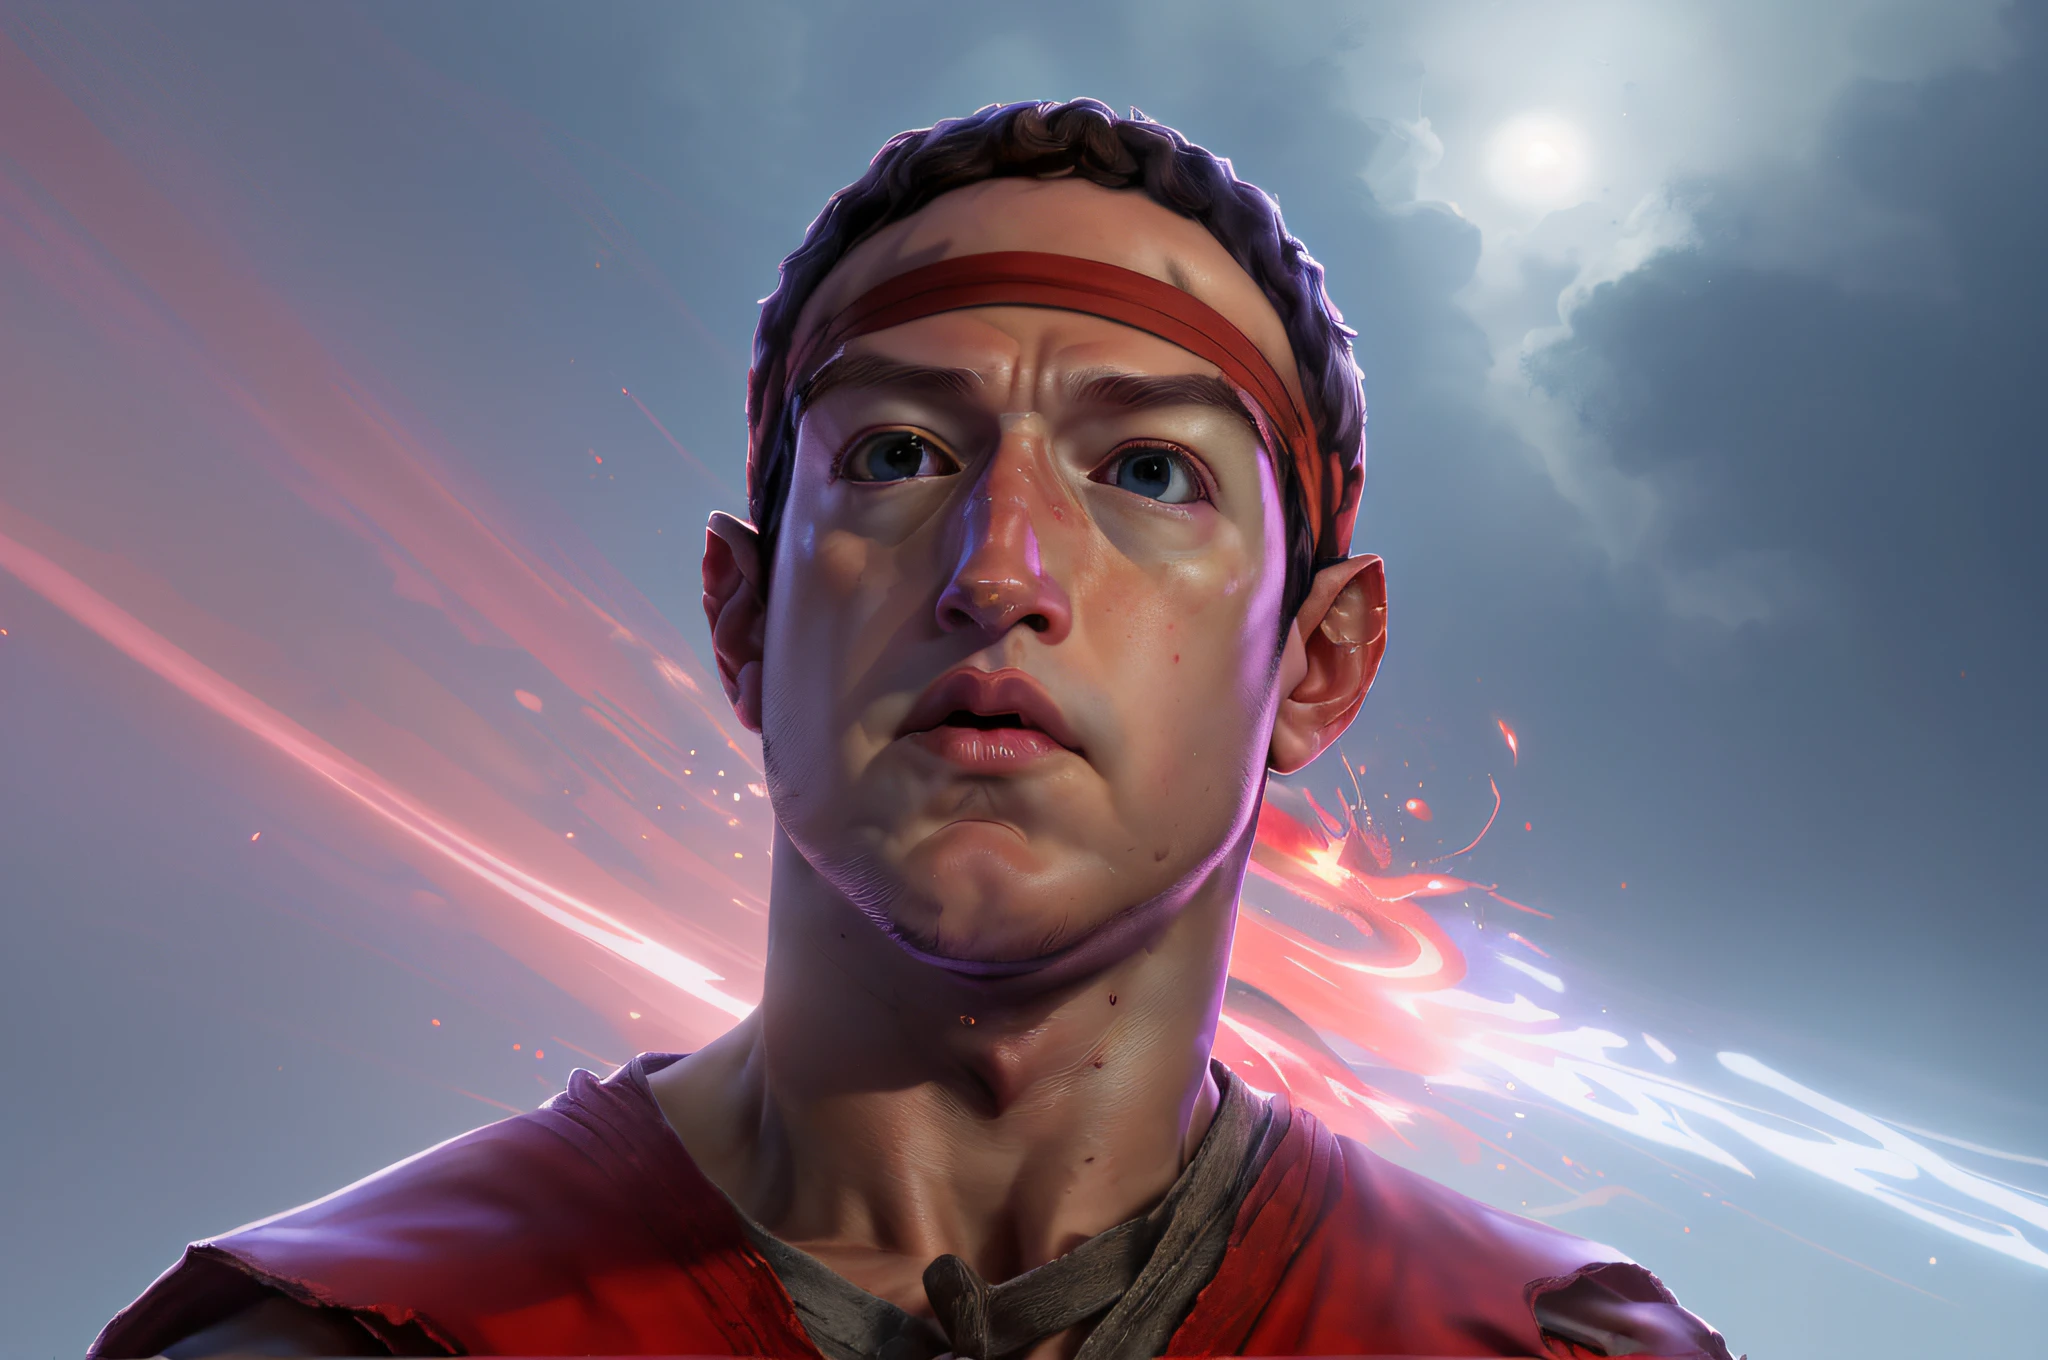 **Mark Zuckerberg Face arte de рю de Street Fighter apresenta raiva, Очень детальное лицо, повязка на голову красная, Чрезвычайно детализированная среда, подробная предыстория, экстремальные цвета, профессиональная цветокоррекция, краевое освещение, огонь, и хаос, рю**